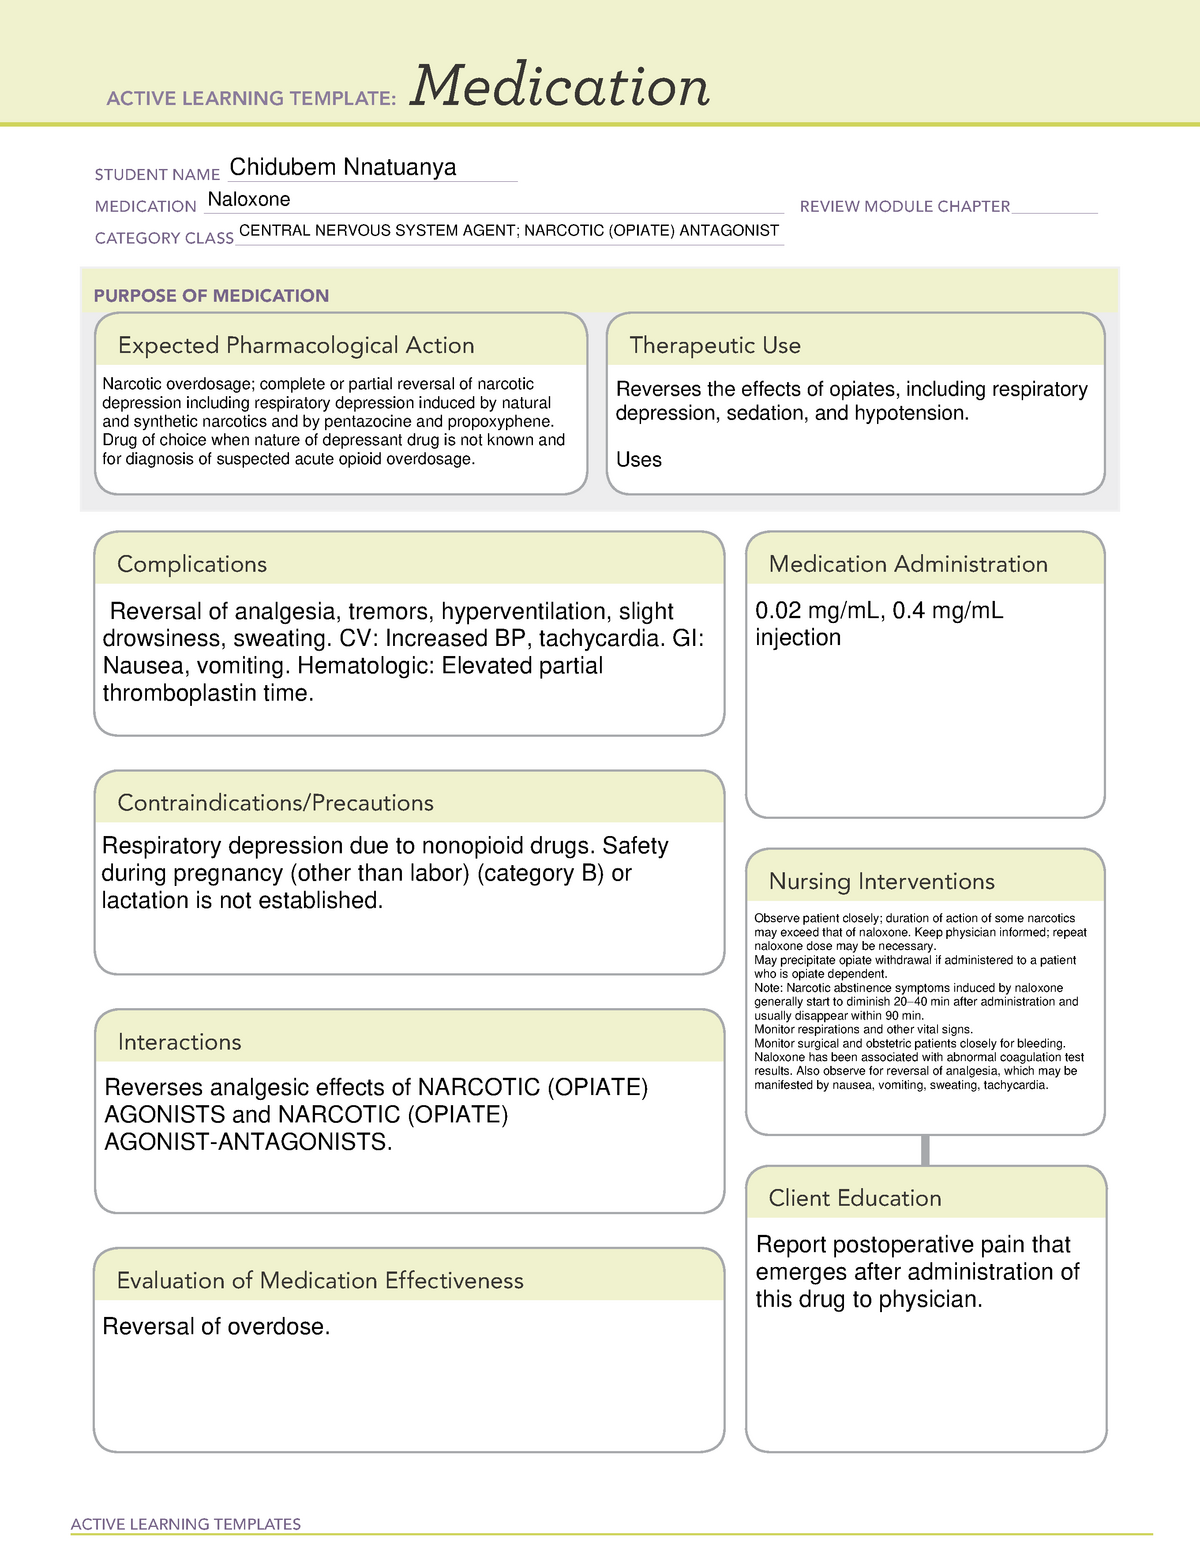 naloxone-ati-medication-template